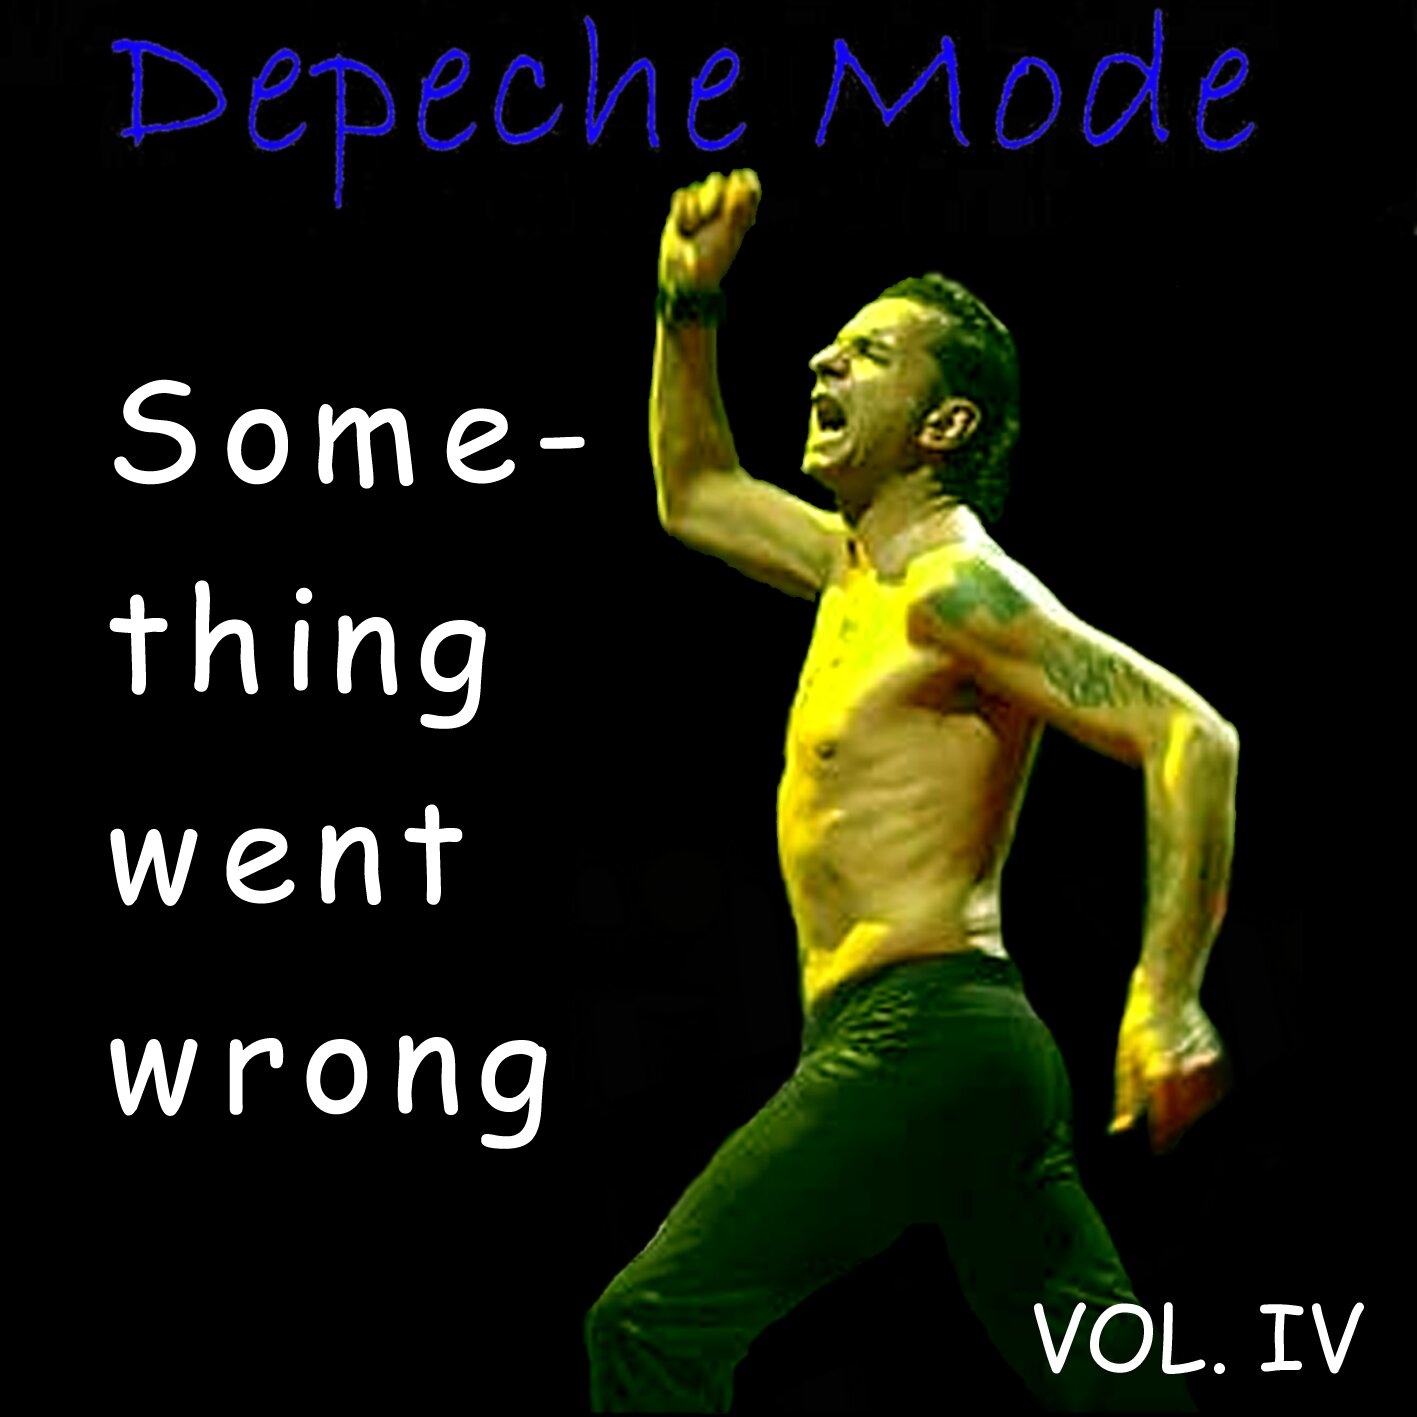 Fan Mode альбомы. Wrong depeche